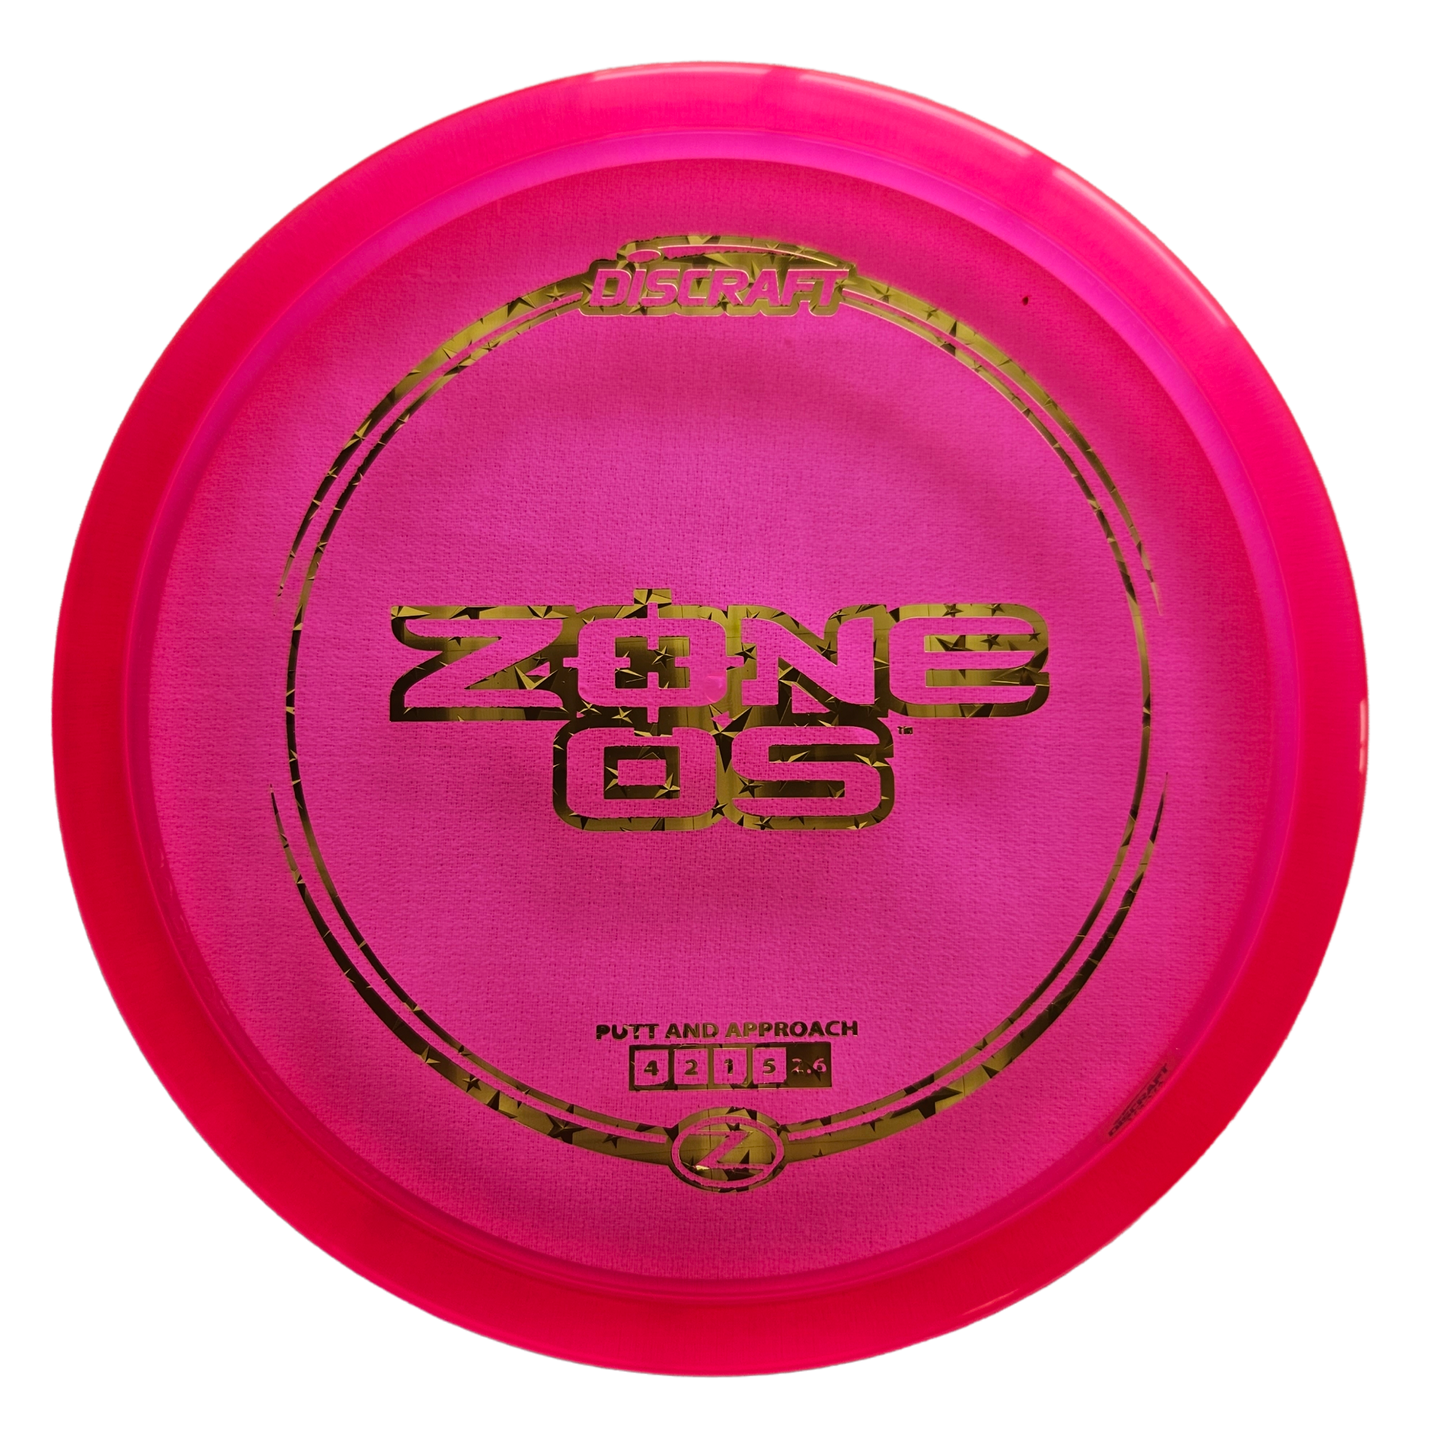 Discraft - Zone OS (Z-Line)